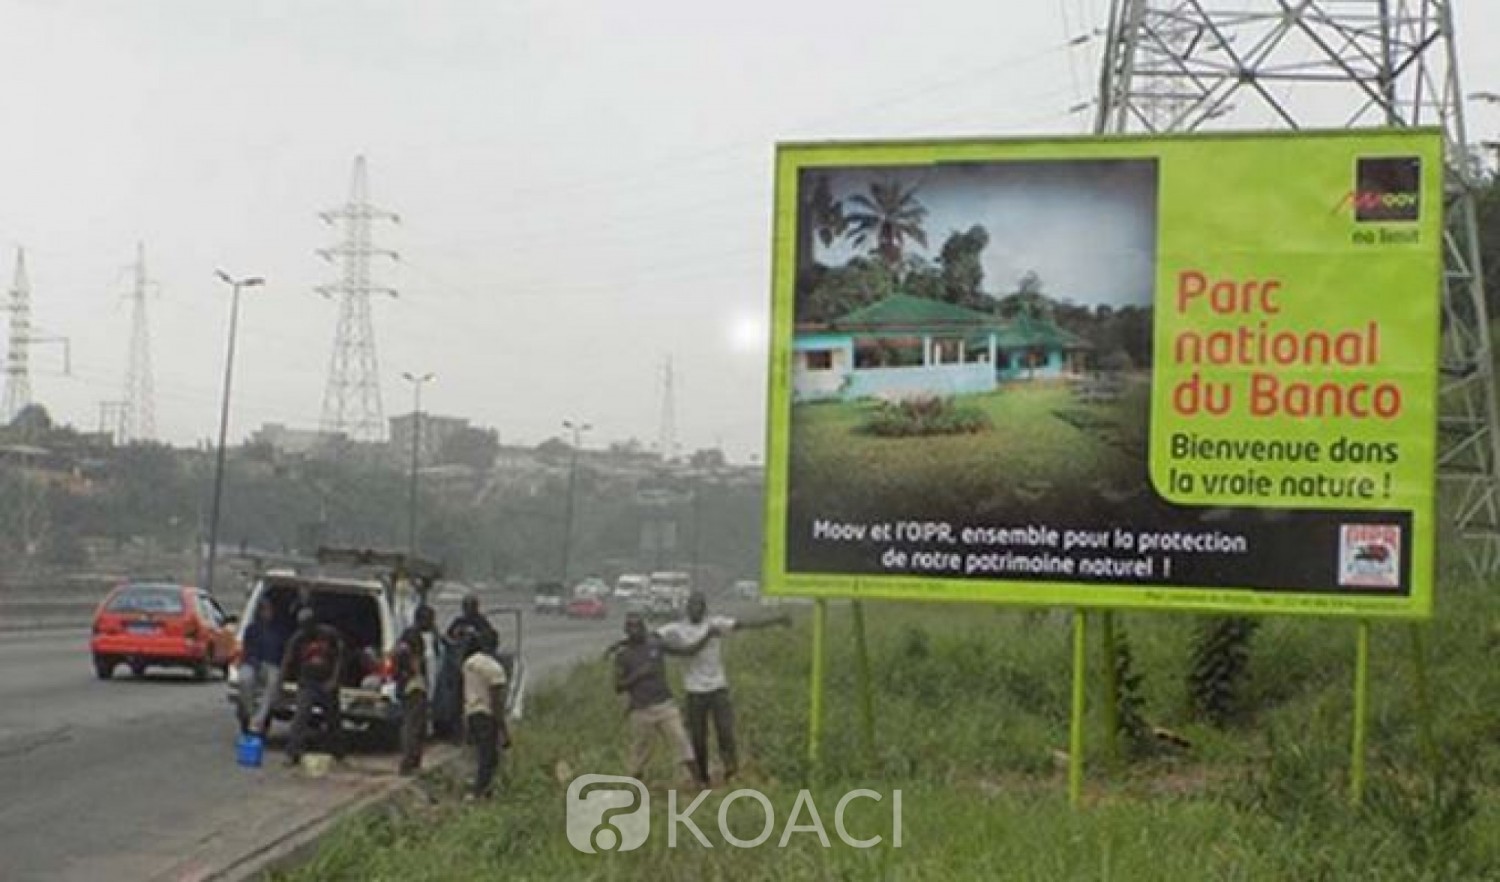 Côte d'Ivoire : Perturbation du réseau Moov à l'ouest du fait de travaux d'aménagement des routes